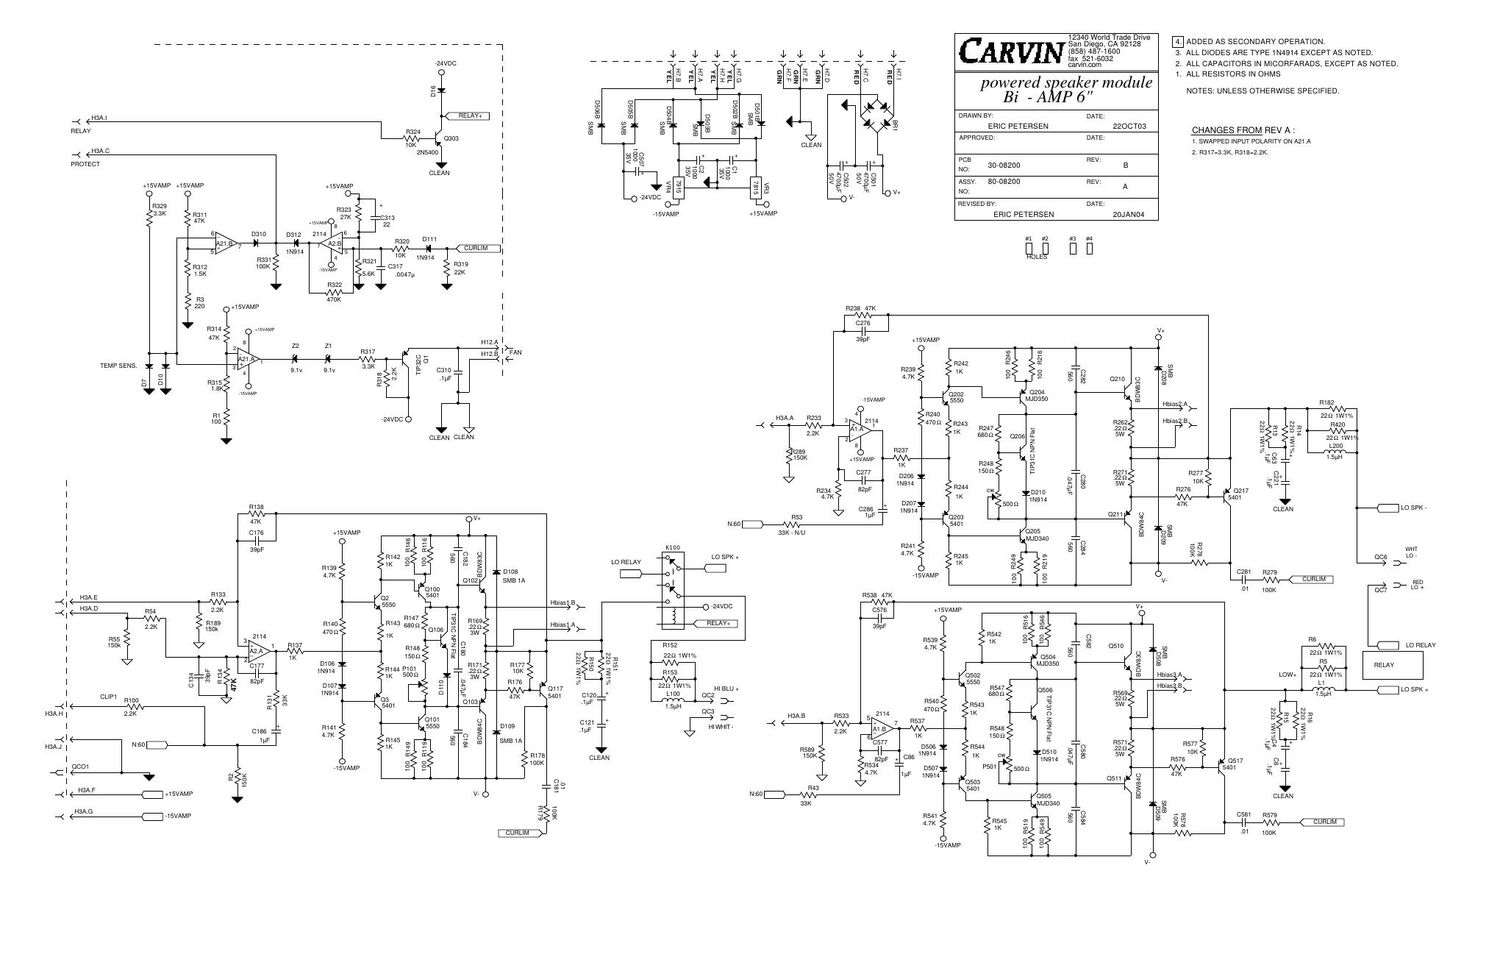 carvin bi amp 6 powered speaker module schematic